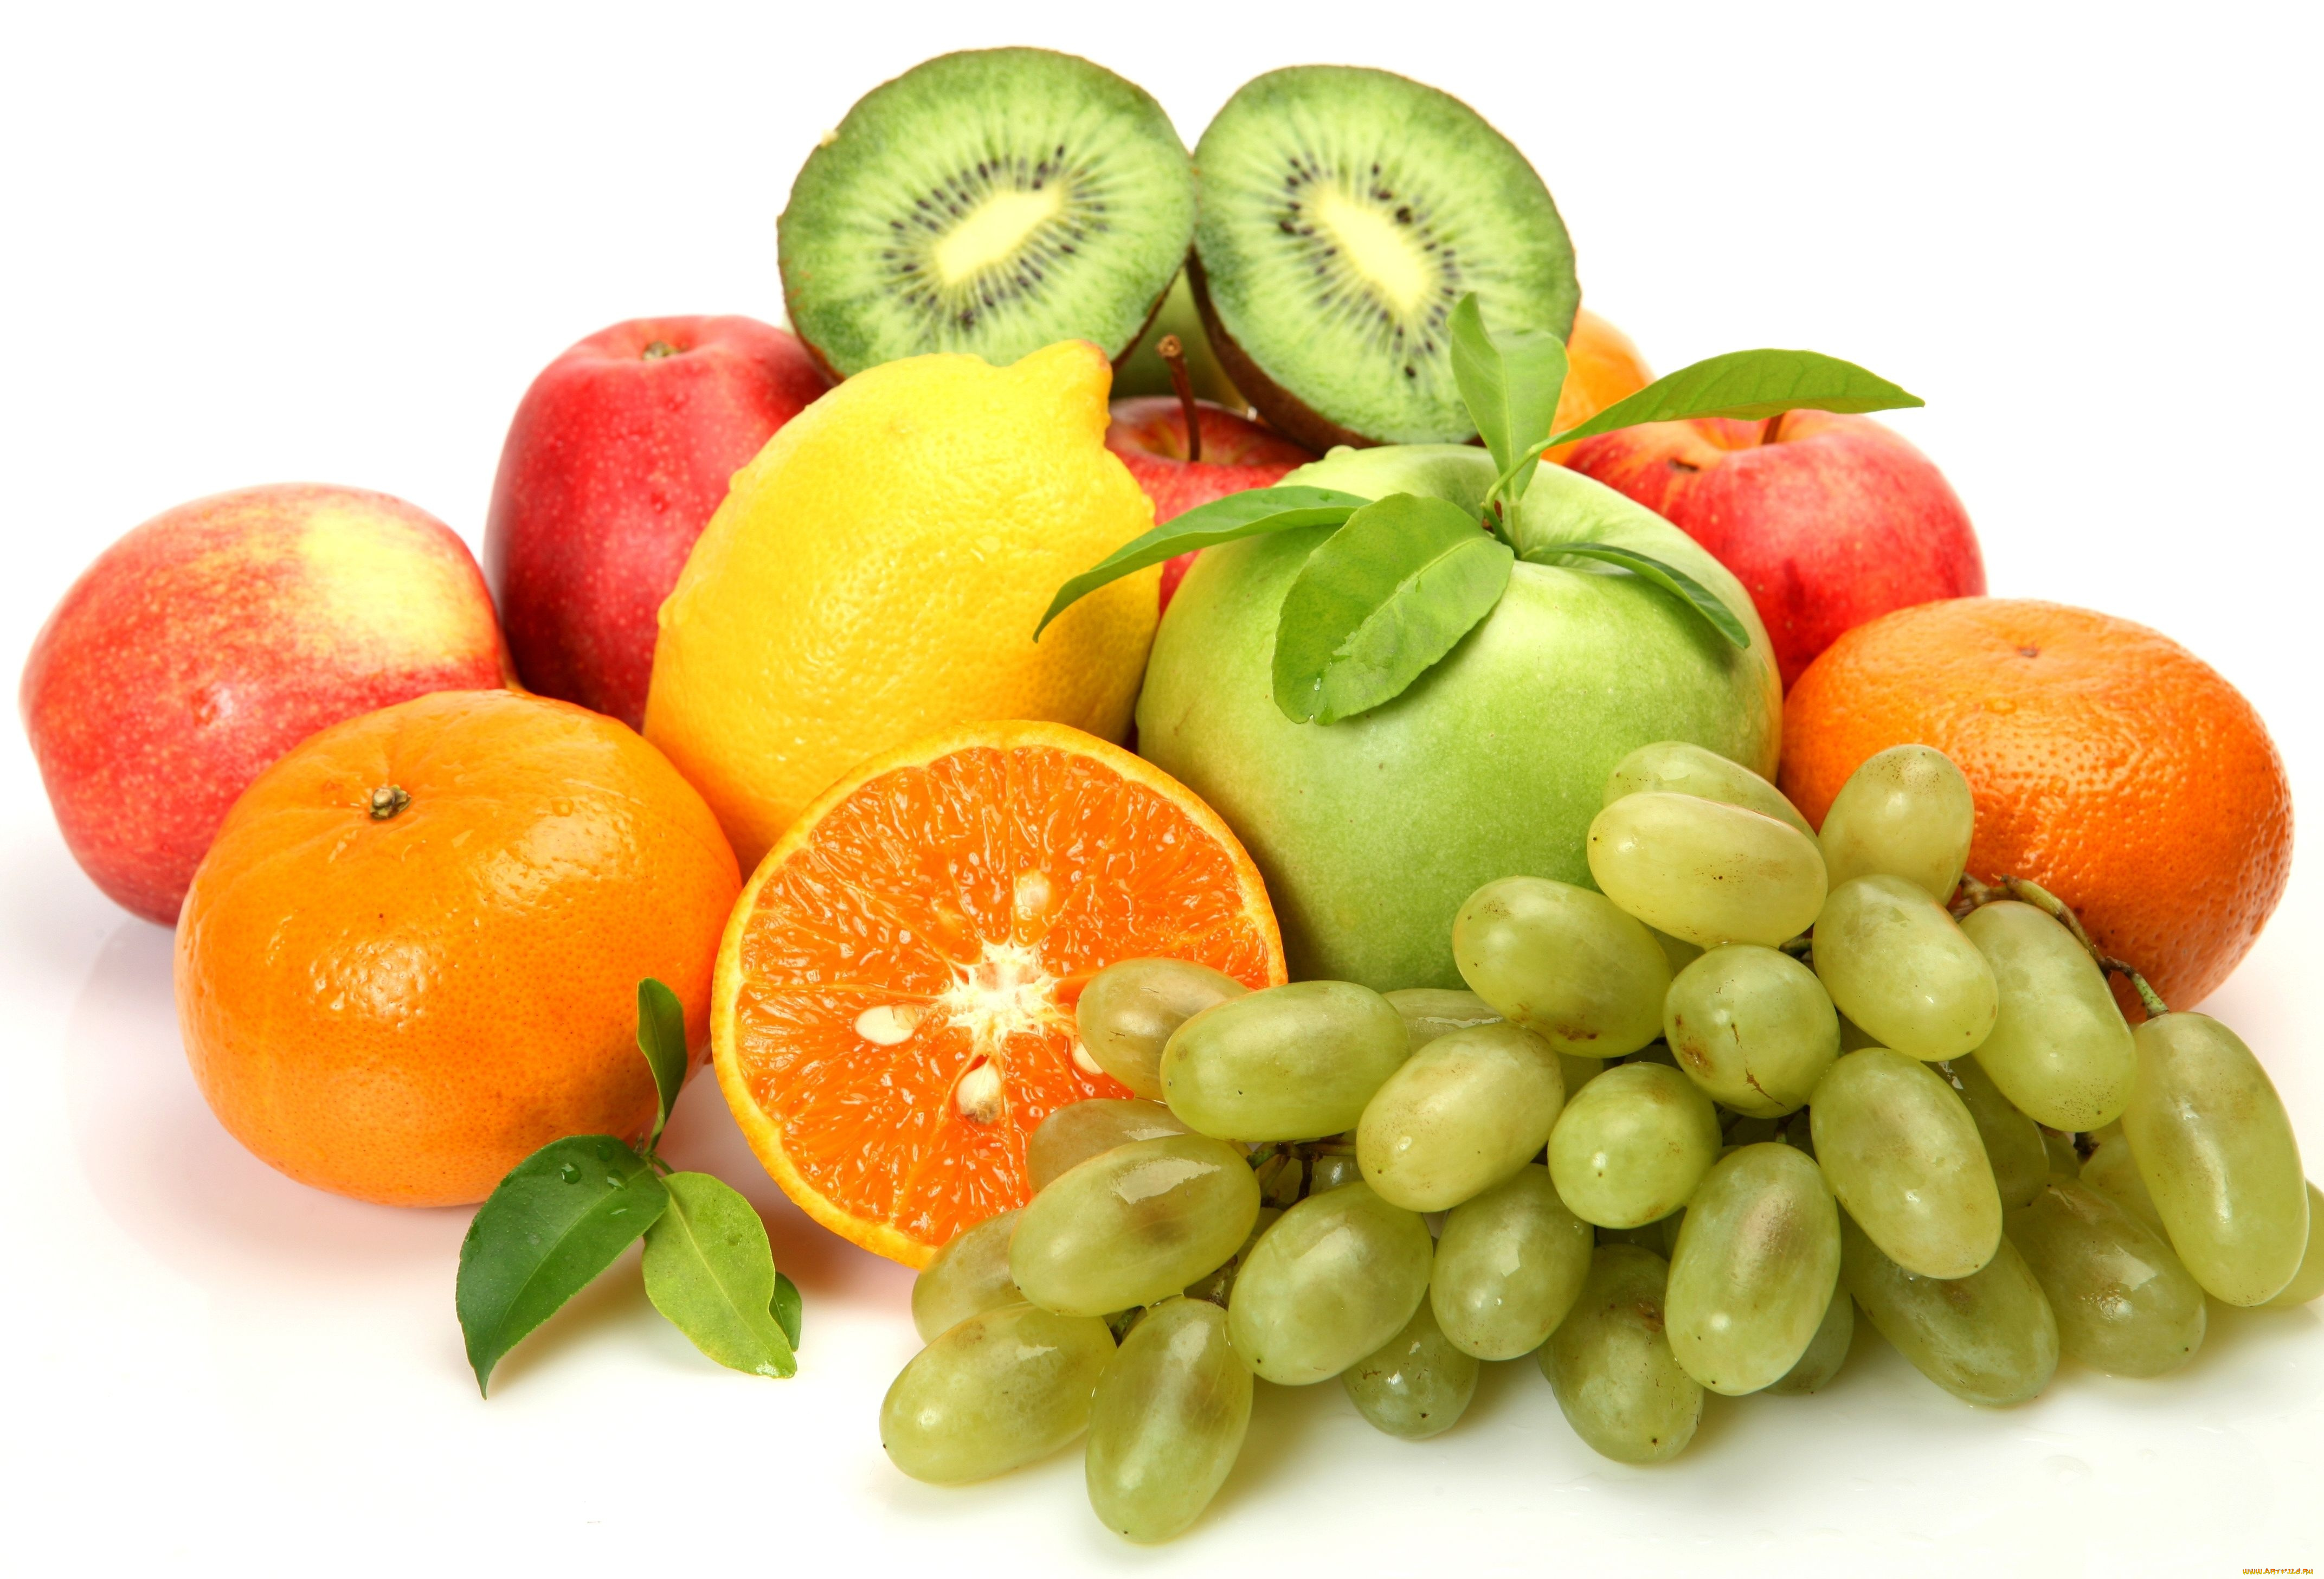 еда, фрукты, ягоды, яблоки, виноград, мандарины, лимон, киви